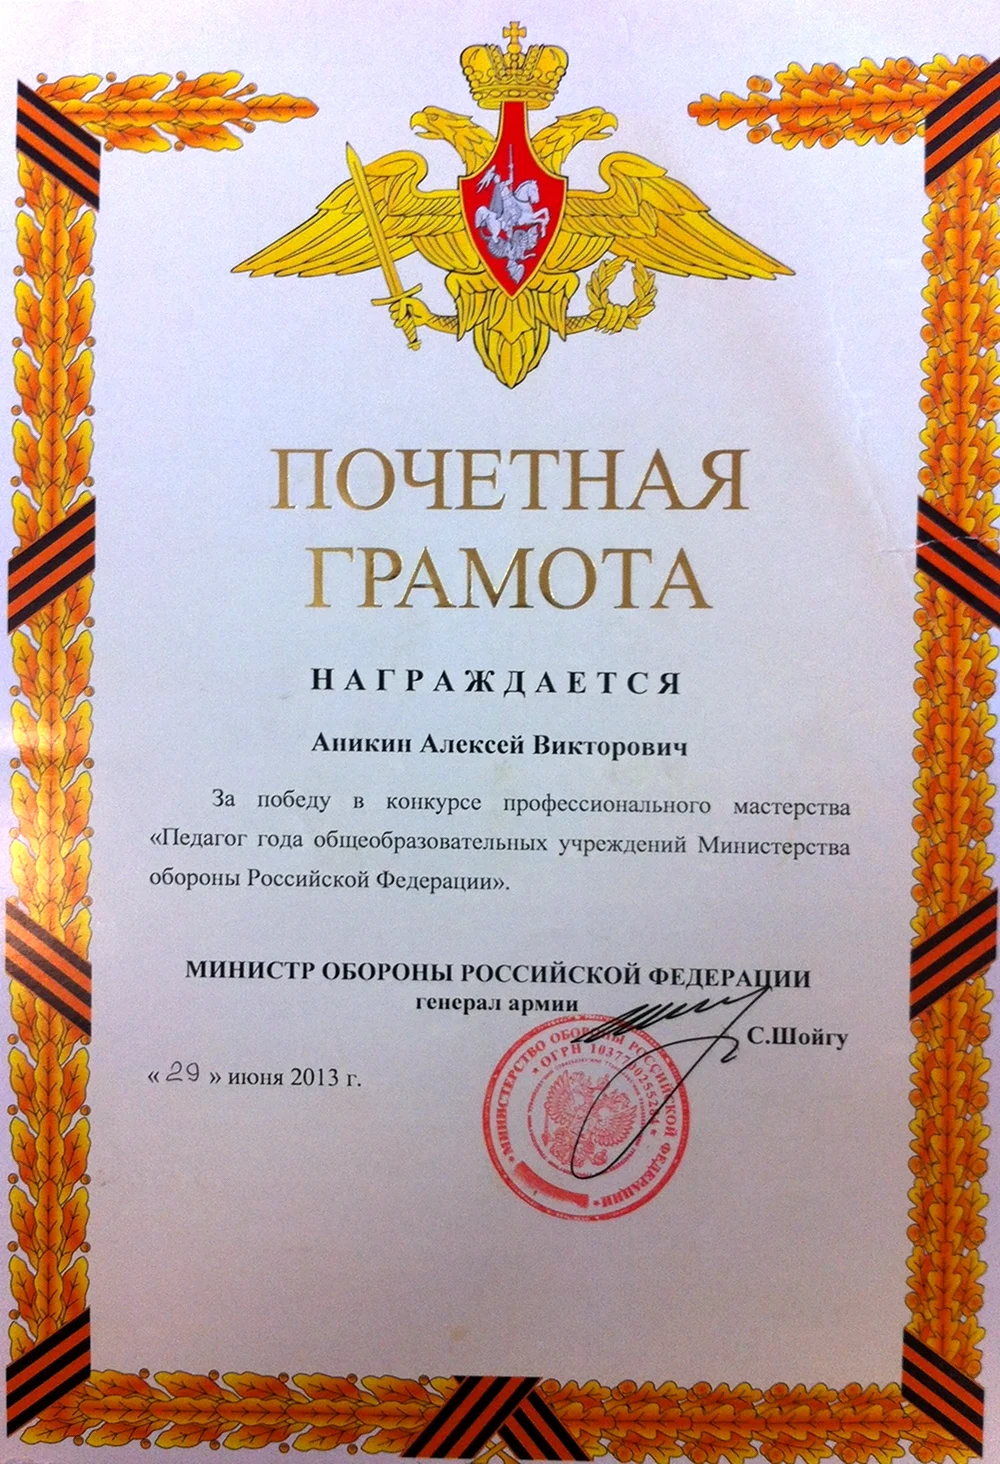 Дипломы Министерства обороны РФ